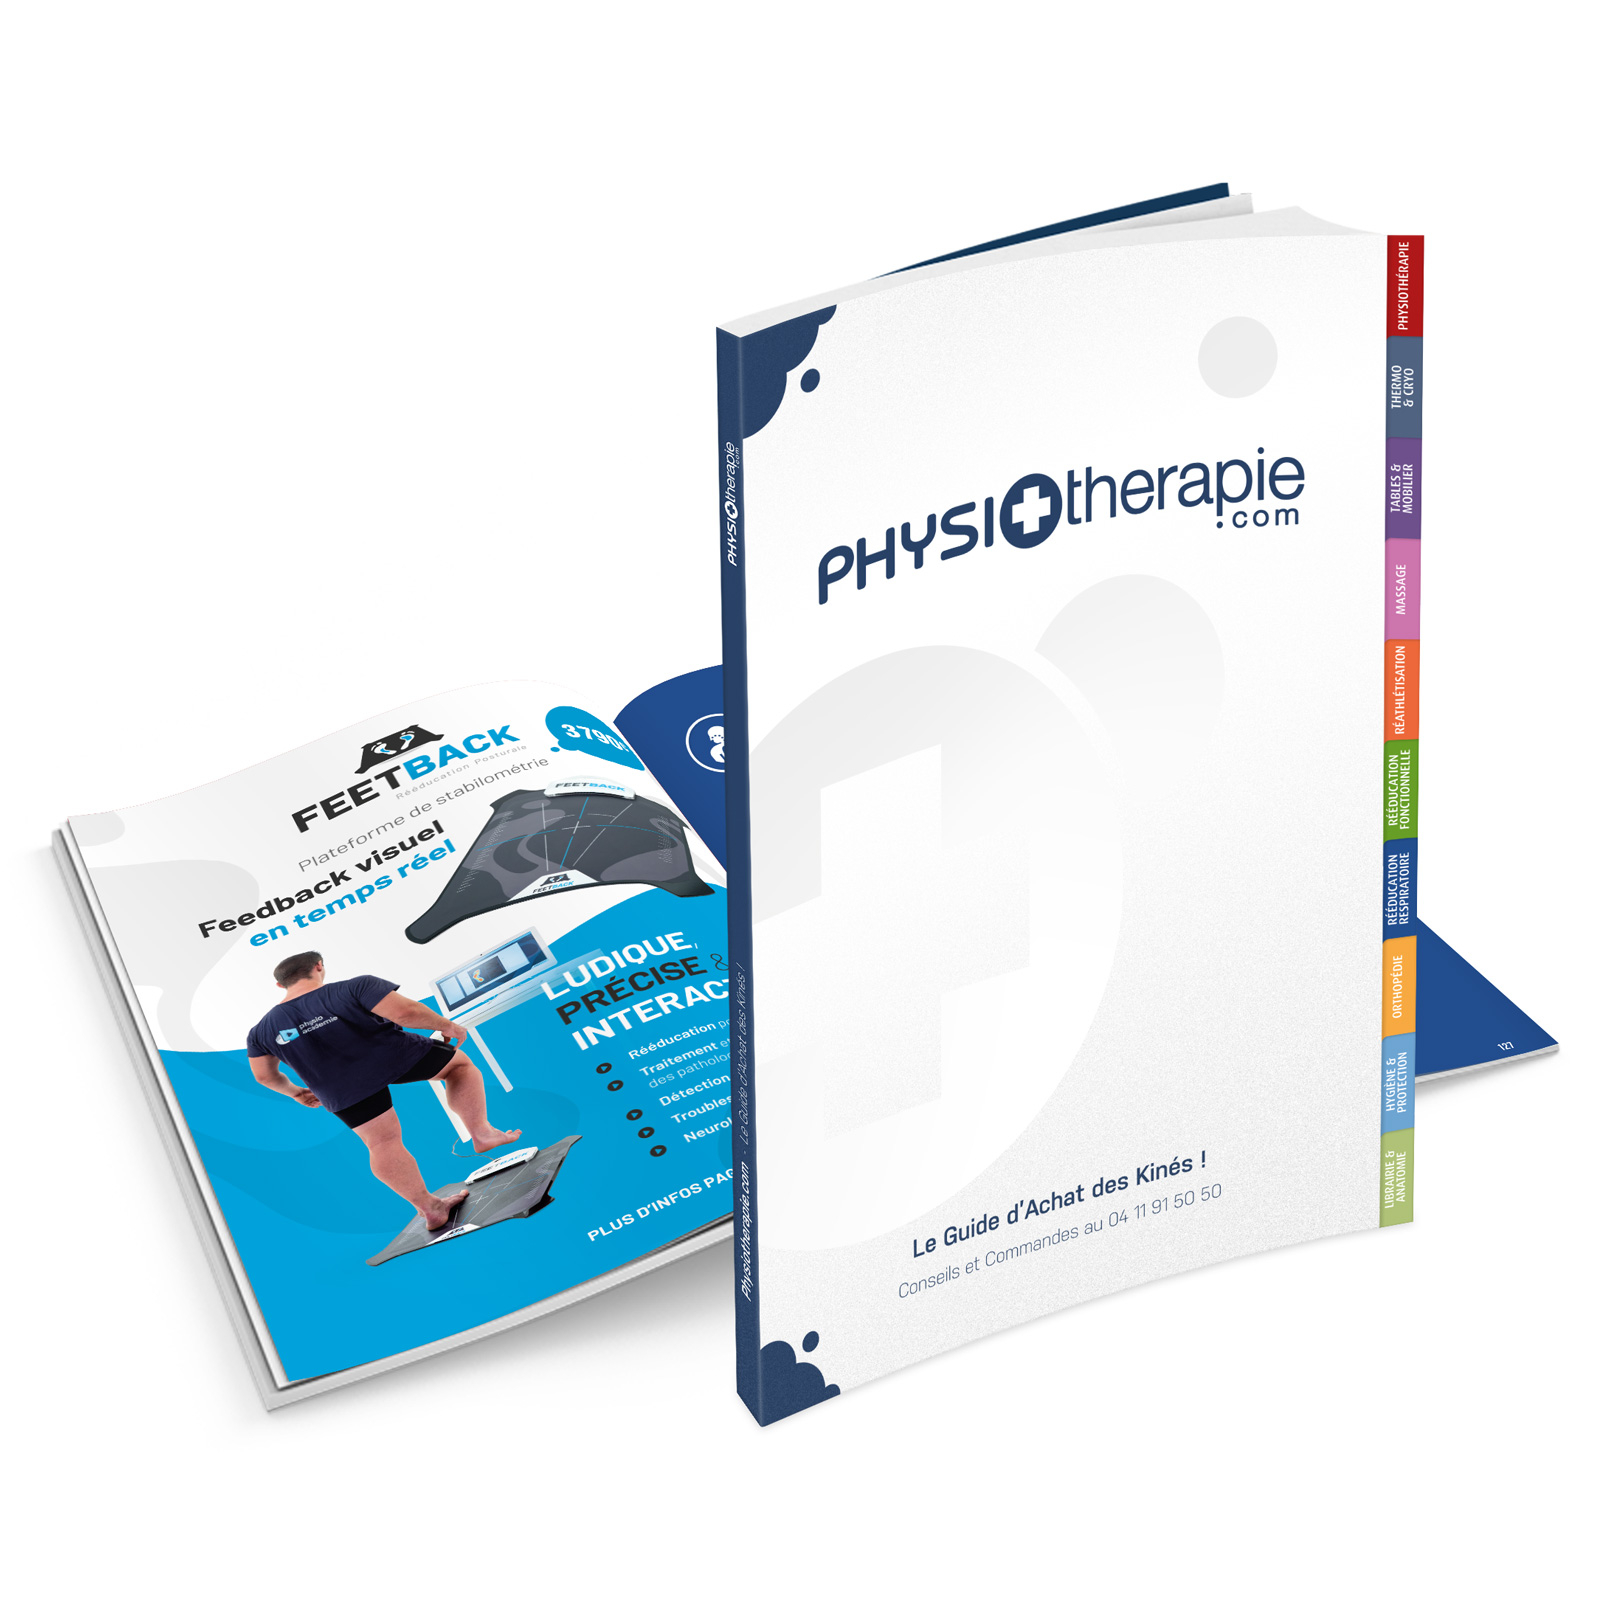 Catalogue Physiotherapie.com